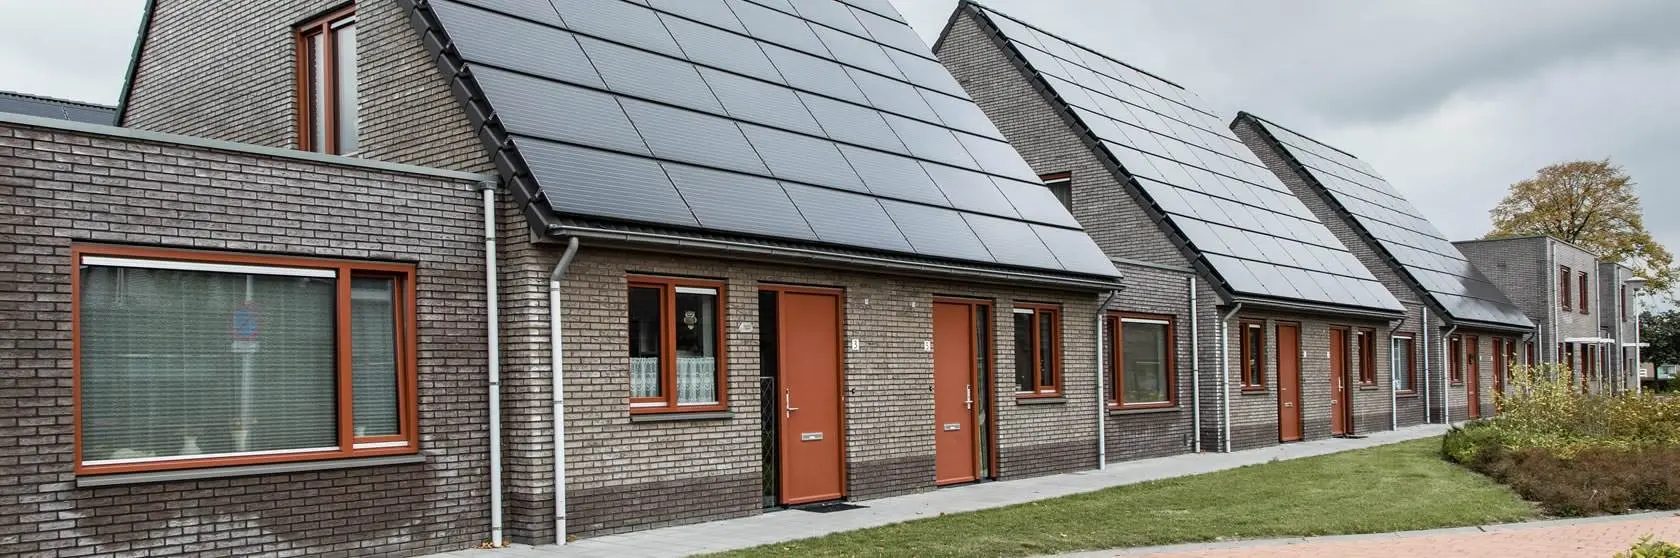 Duurzaamheidsconcepten van installatiebedrijf Mampaey actief in Den Haag en omgeving